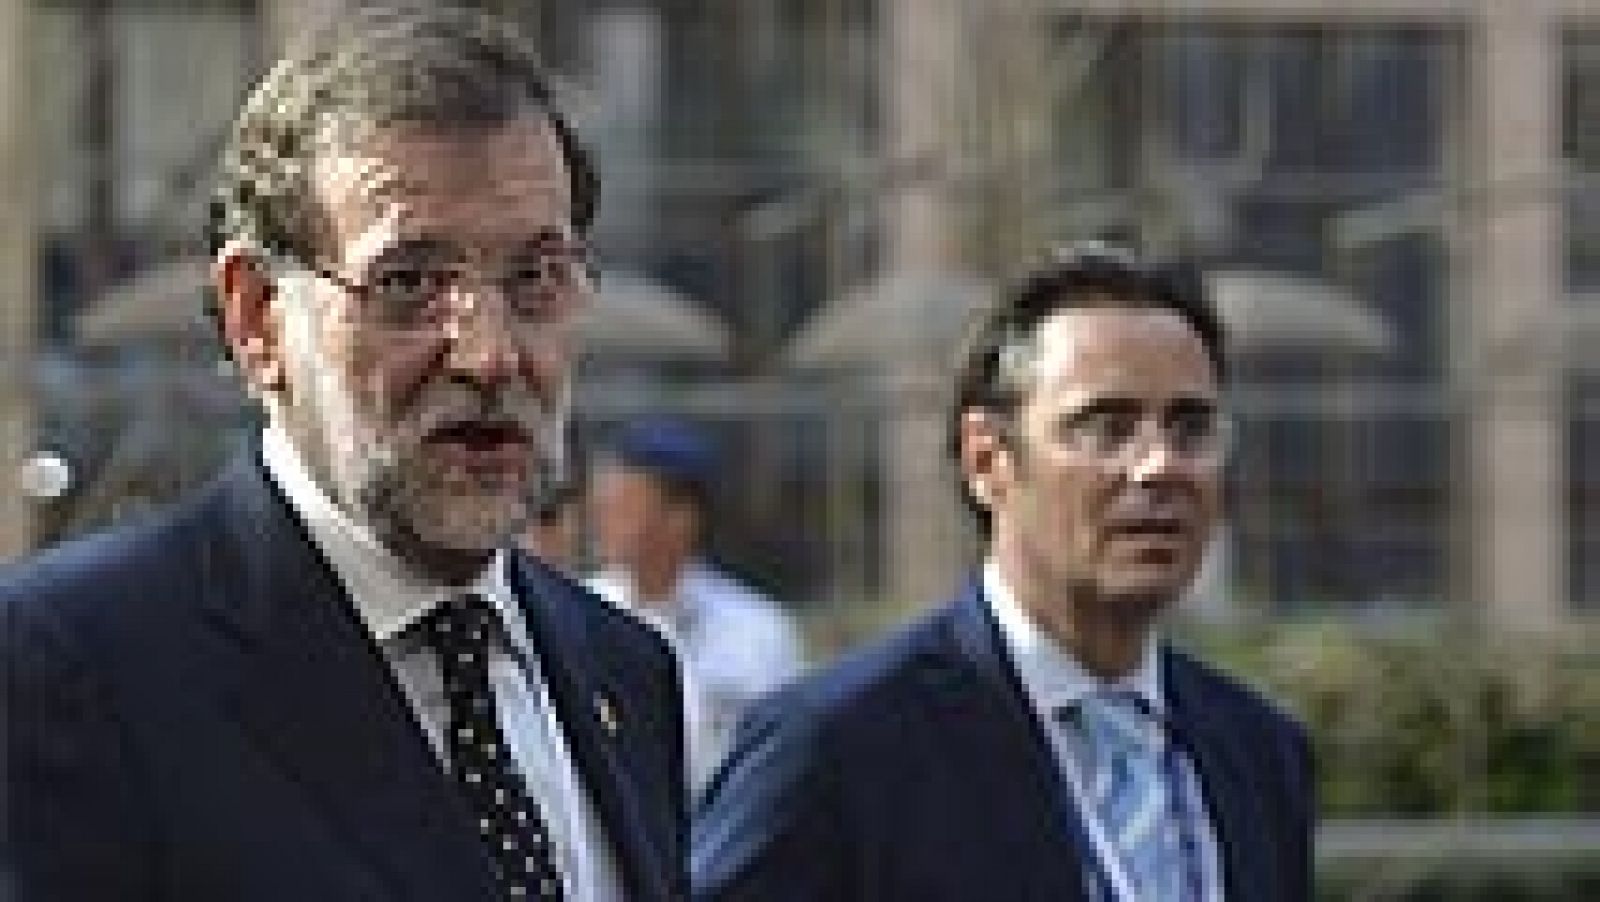 Rajoy responde a Mas que no entrará "en el juego" de negociar la fecha o pregunta de la consulta 